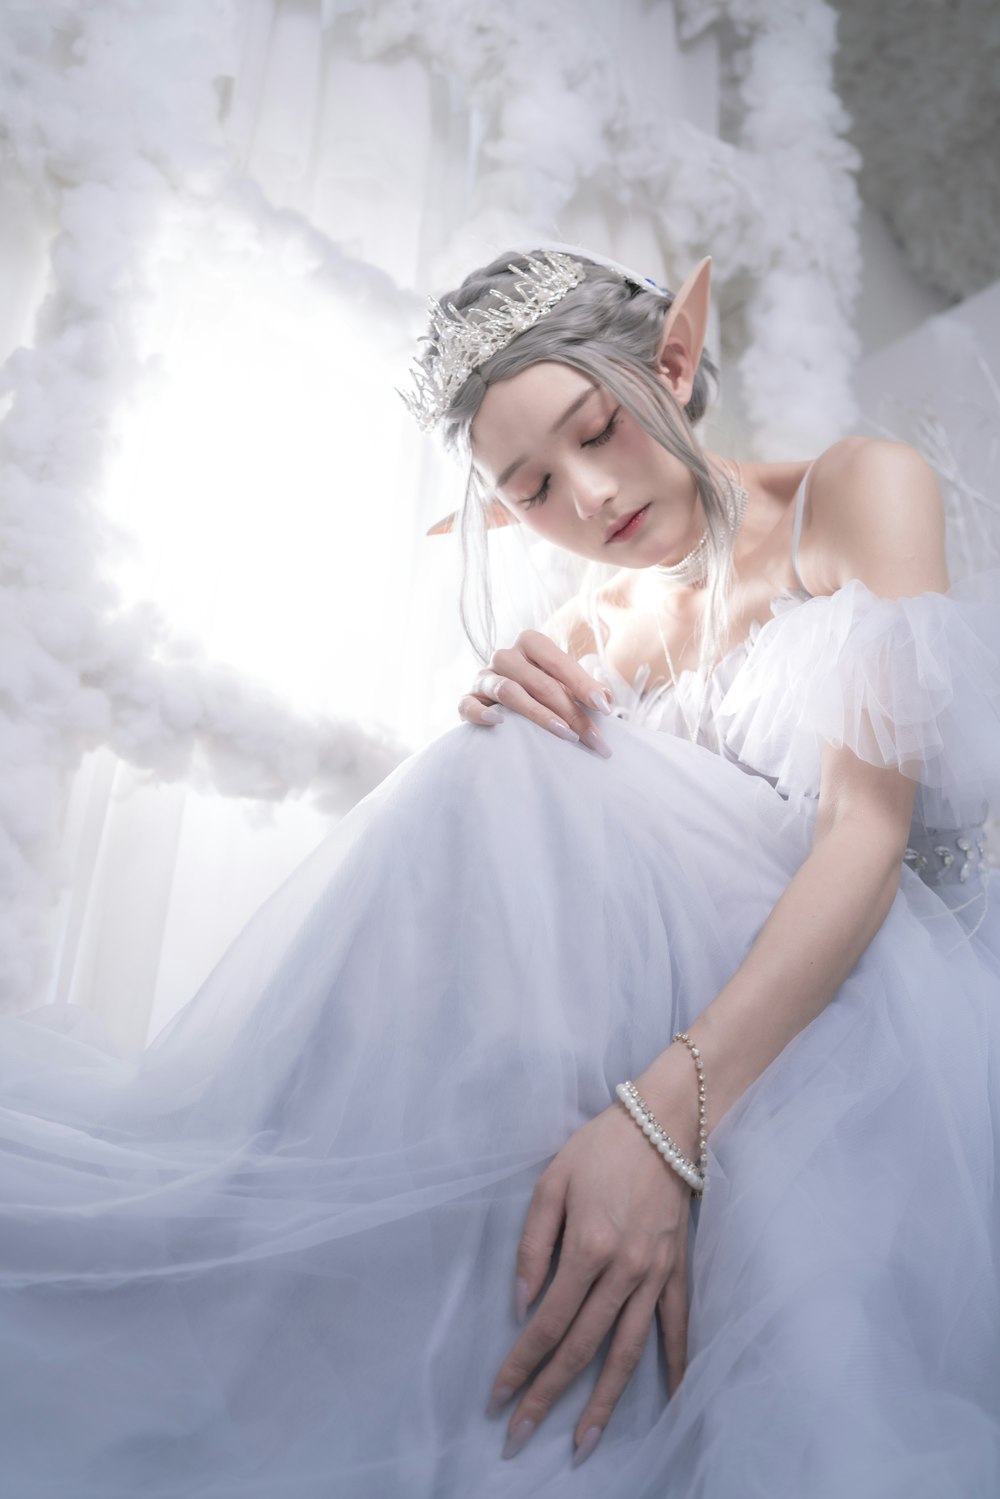 Una mujer con un vestido blanco con una tiara